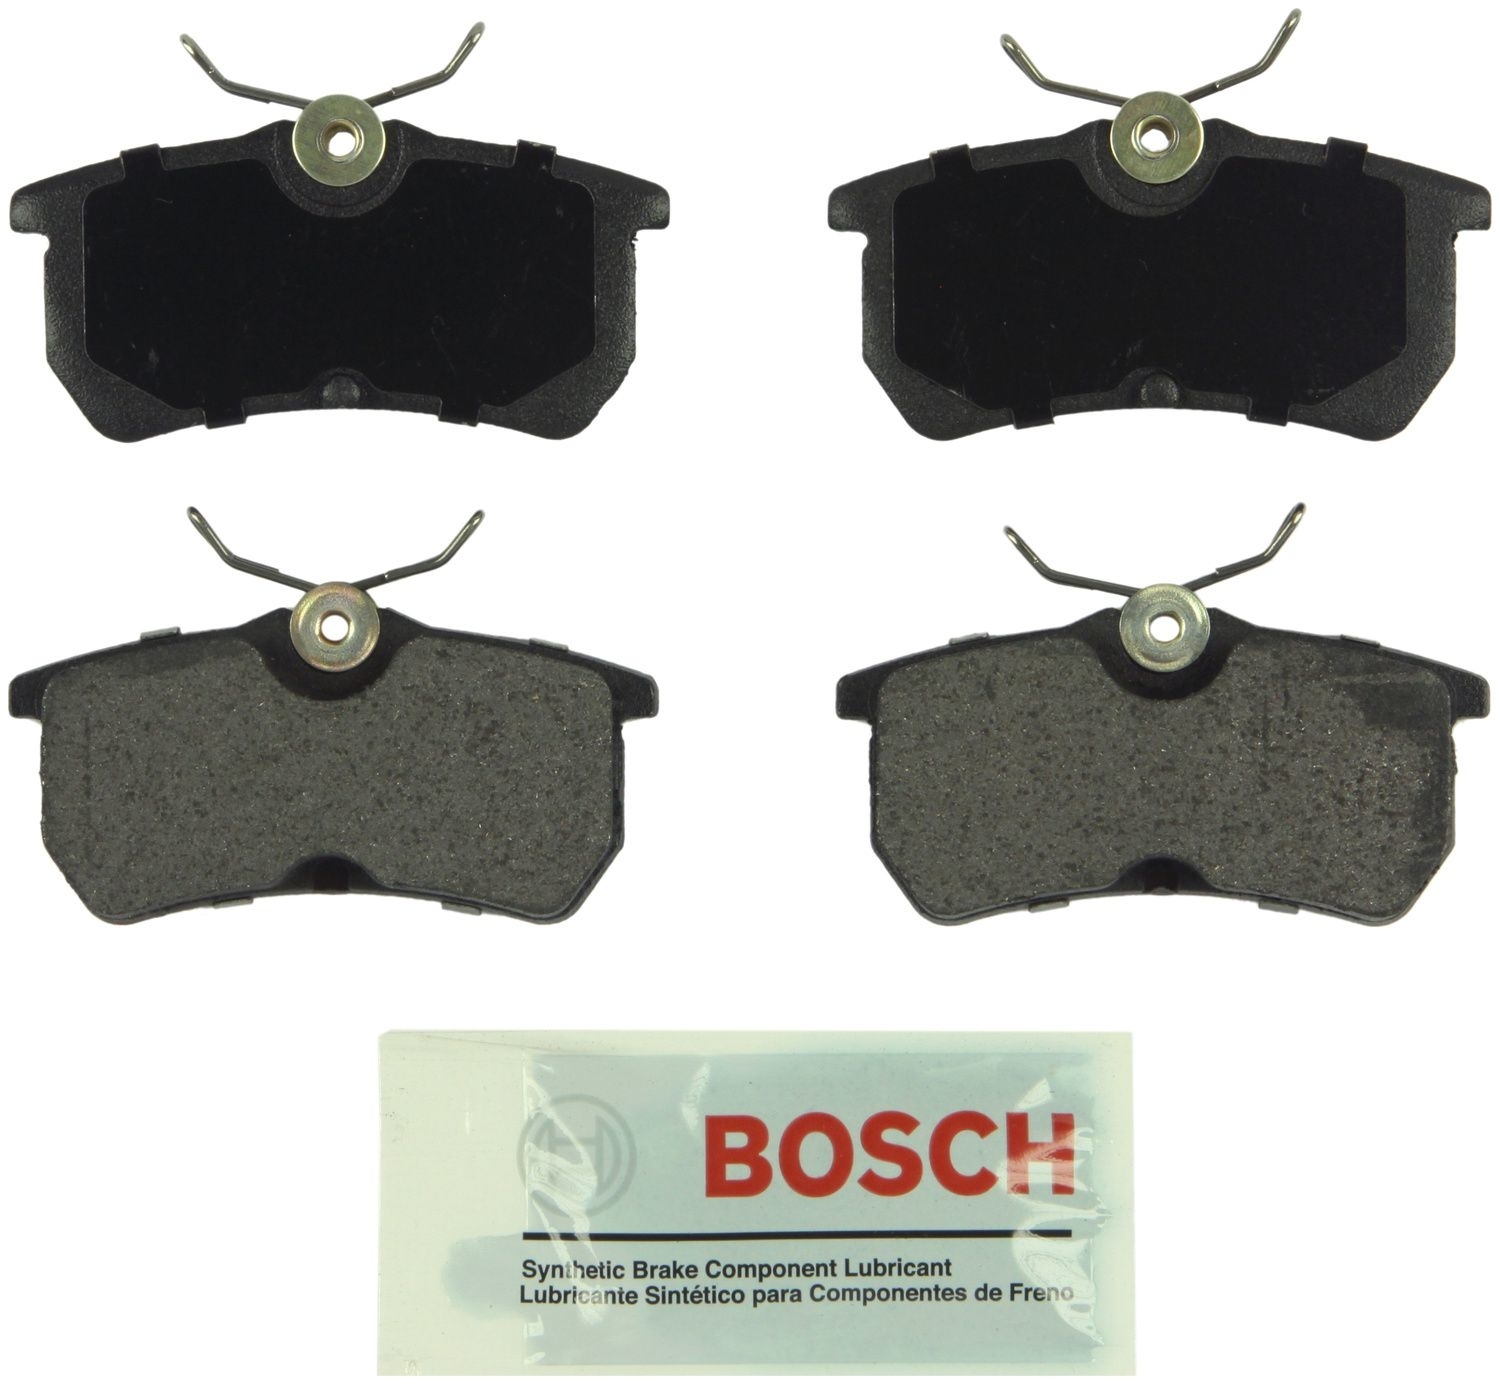 BOSCH BRAKE - Bosch Blue Semi-Metallic Brake Pads (Rear) - BQC BE886